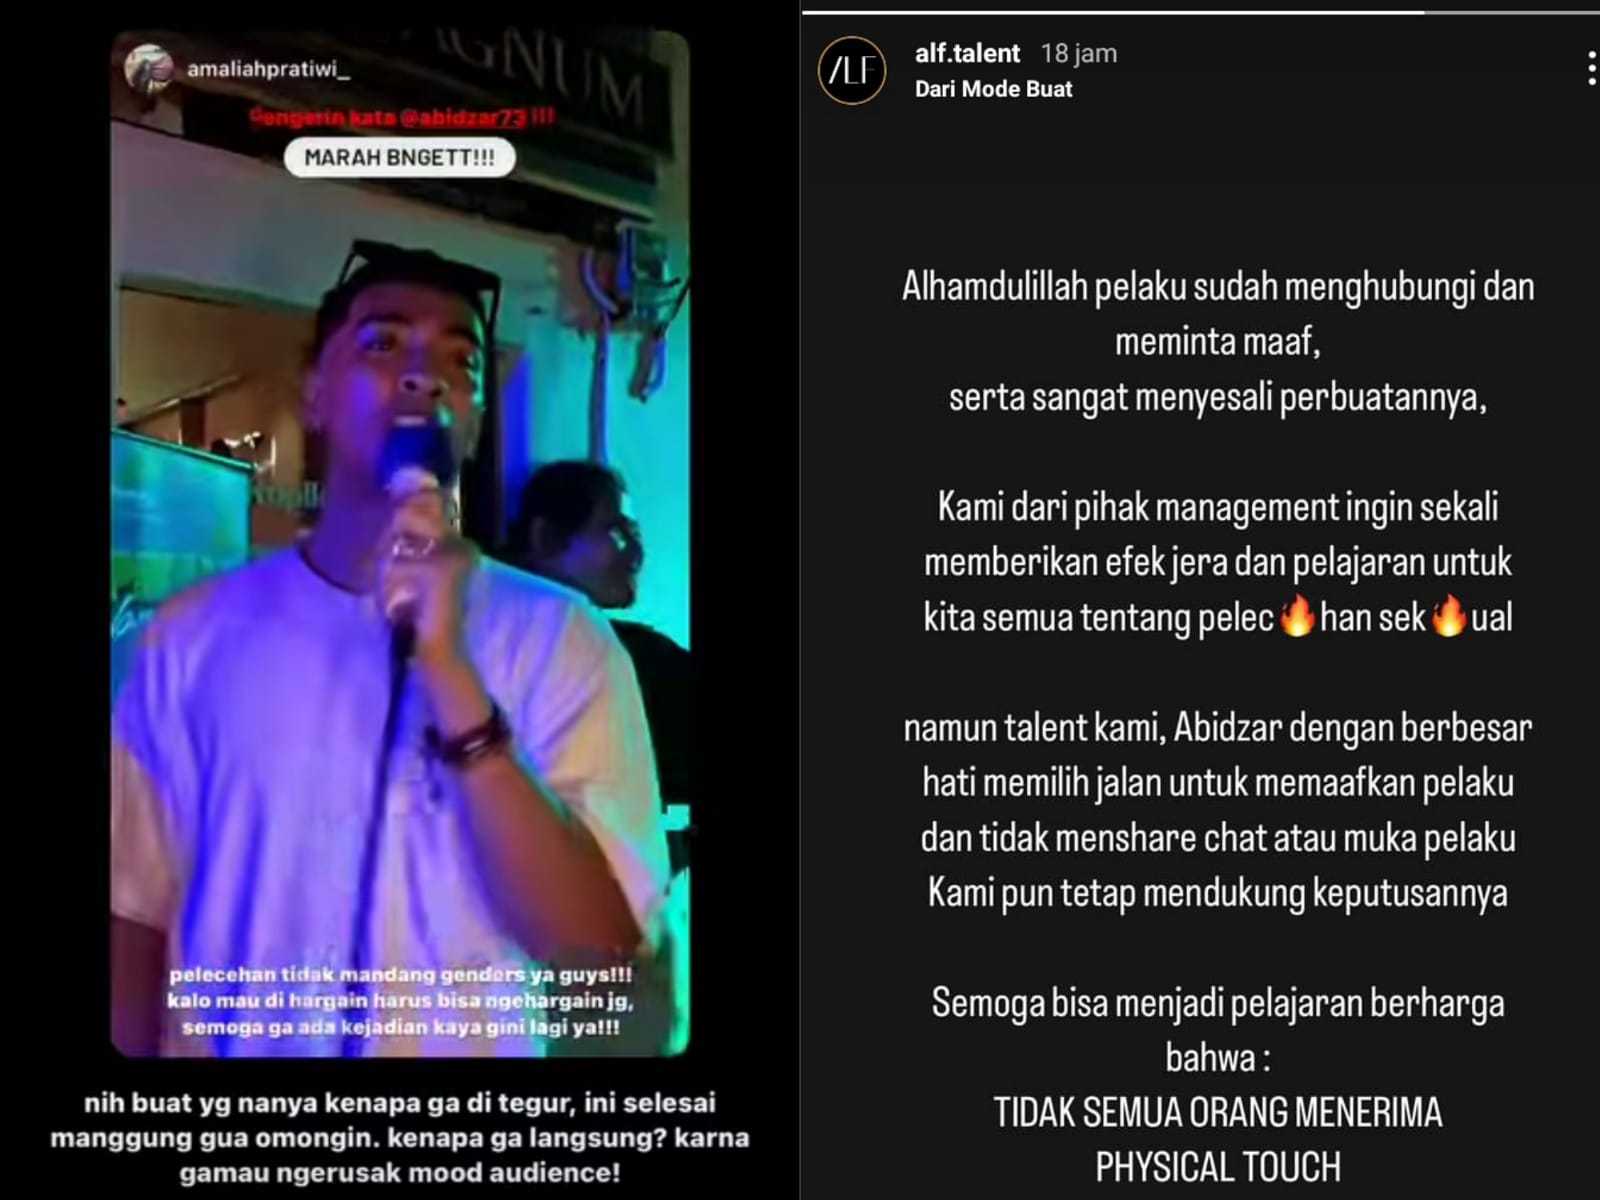 Update Kasus Pelecehan Seksual Abidzar di Tempat Karaoke, Pelaku Sudah Meminta Maaf